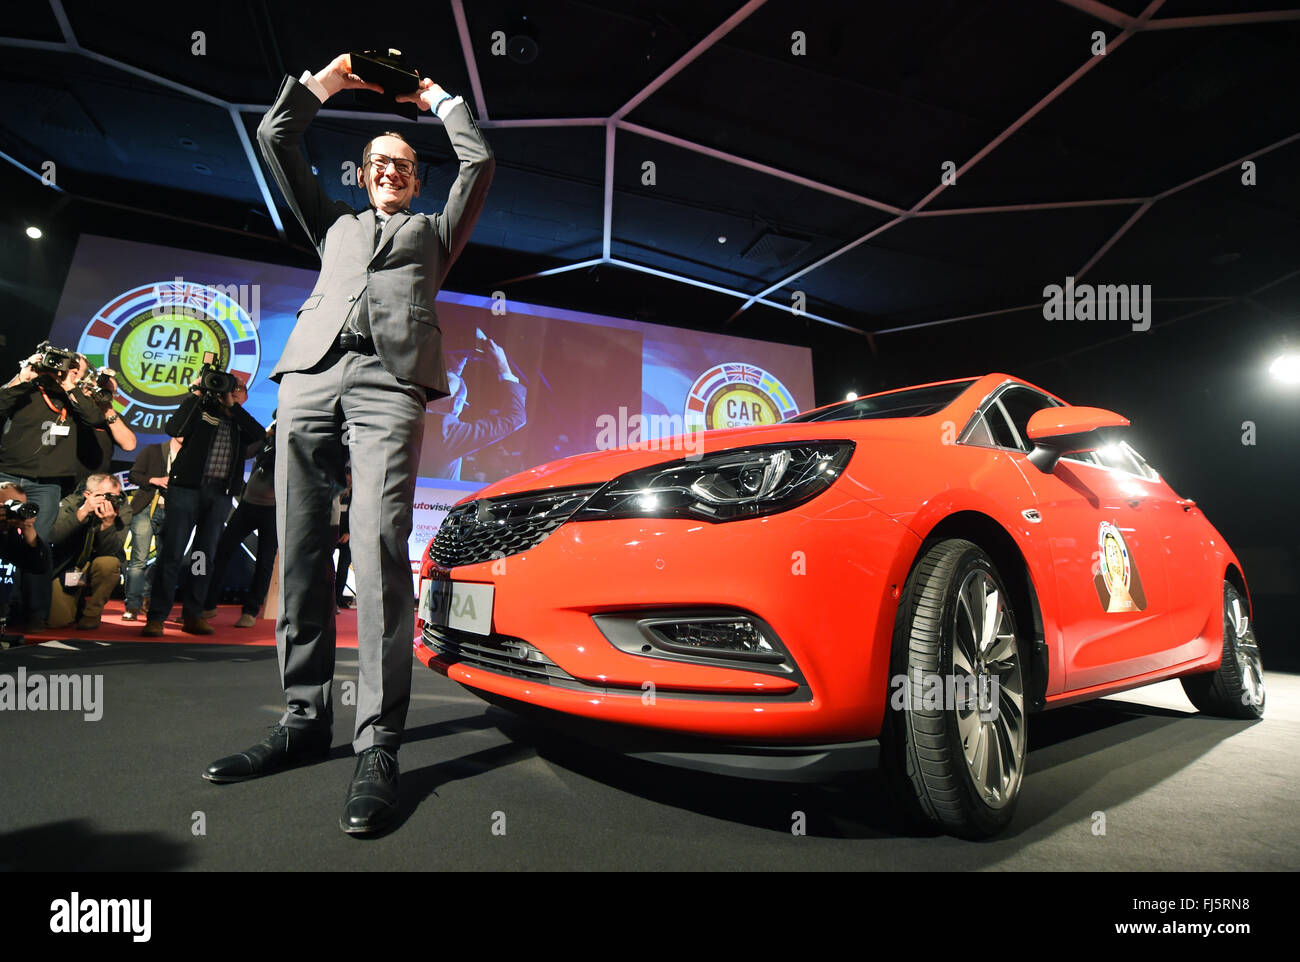 Karl-Thomas Neumann, Président du directoire d'Opel, posant à côté d'une Opel Astra, plus tard, élu Voiture de l'année, sur la première journée de la presse au Salon International de l'Automobile à Genève, Suisse, 29 février 2016. PHOTO : ULI DECK/dpa Banque D'Images